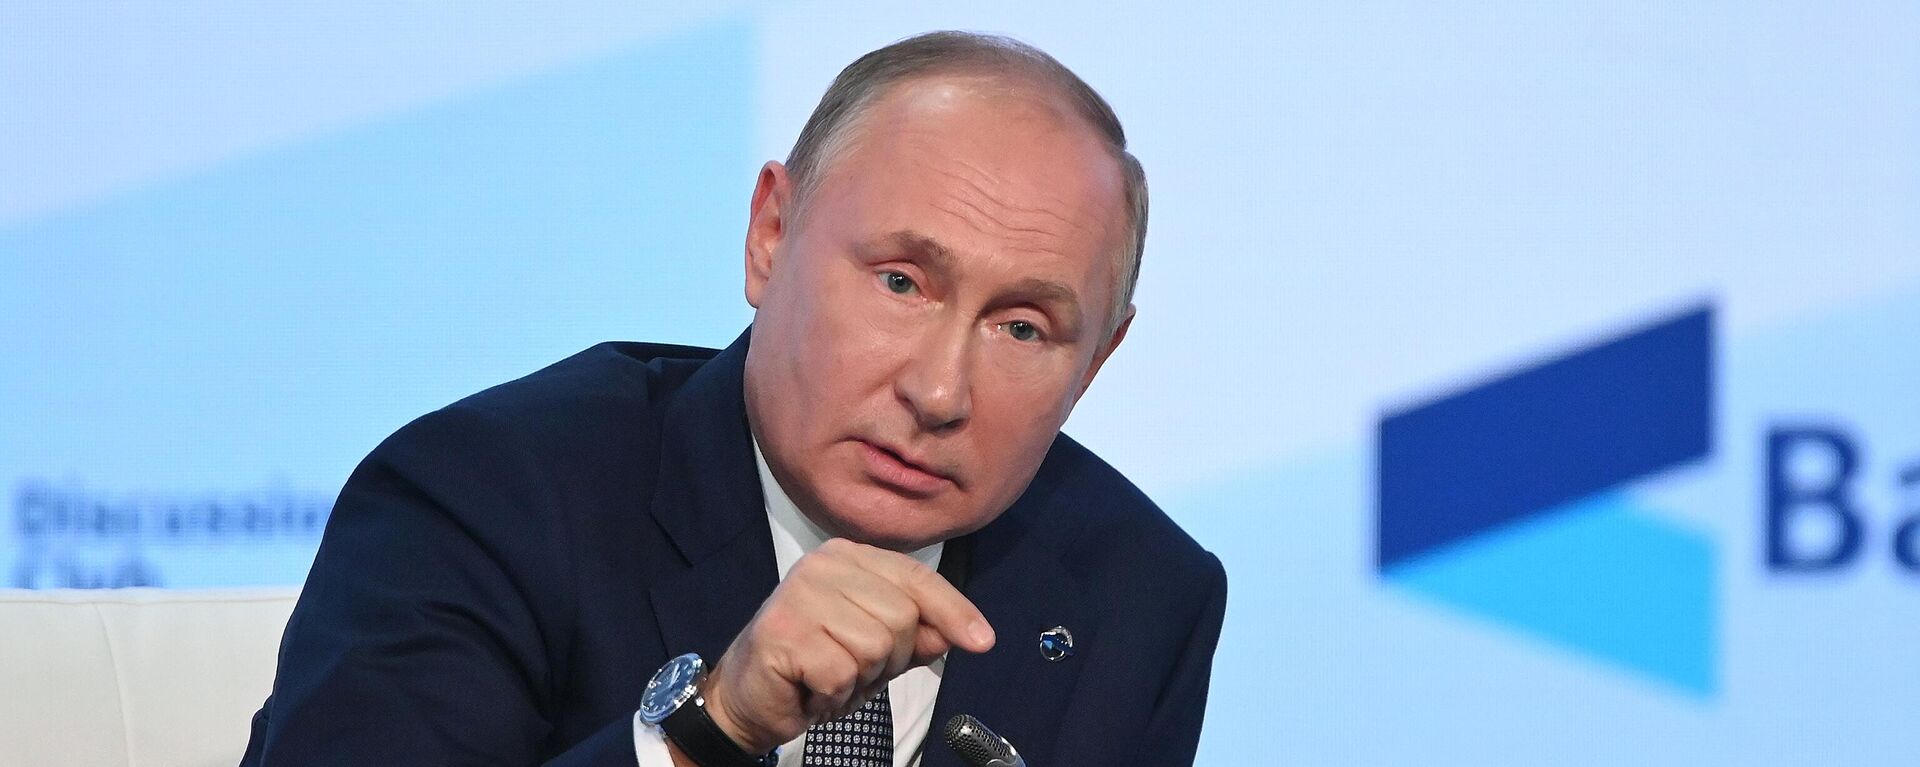 Vladímir Putin, presidente de Rusia, durante su intervención en el Club Internacional Valdái en Sochi (Rusia), el 21 de octubre del 2021 - Sputnik Mundo, 1920, 01.11.2021